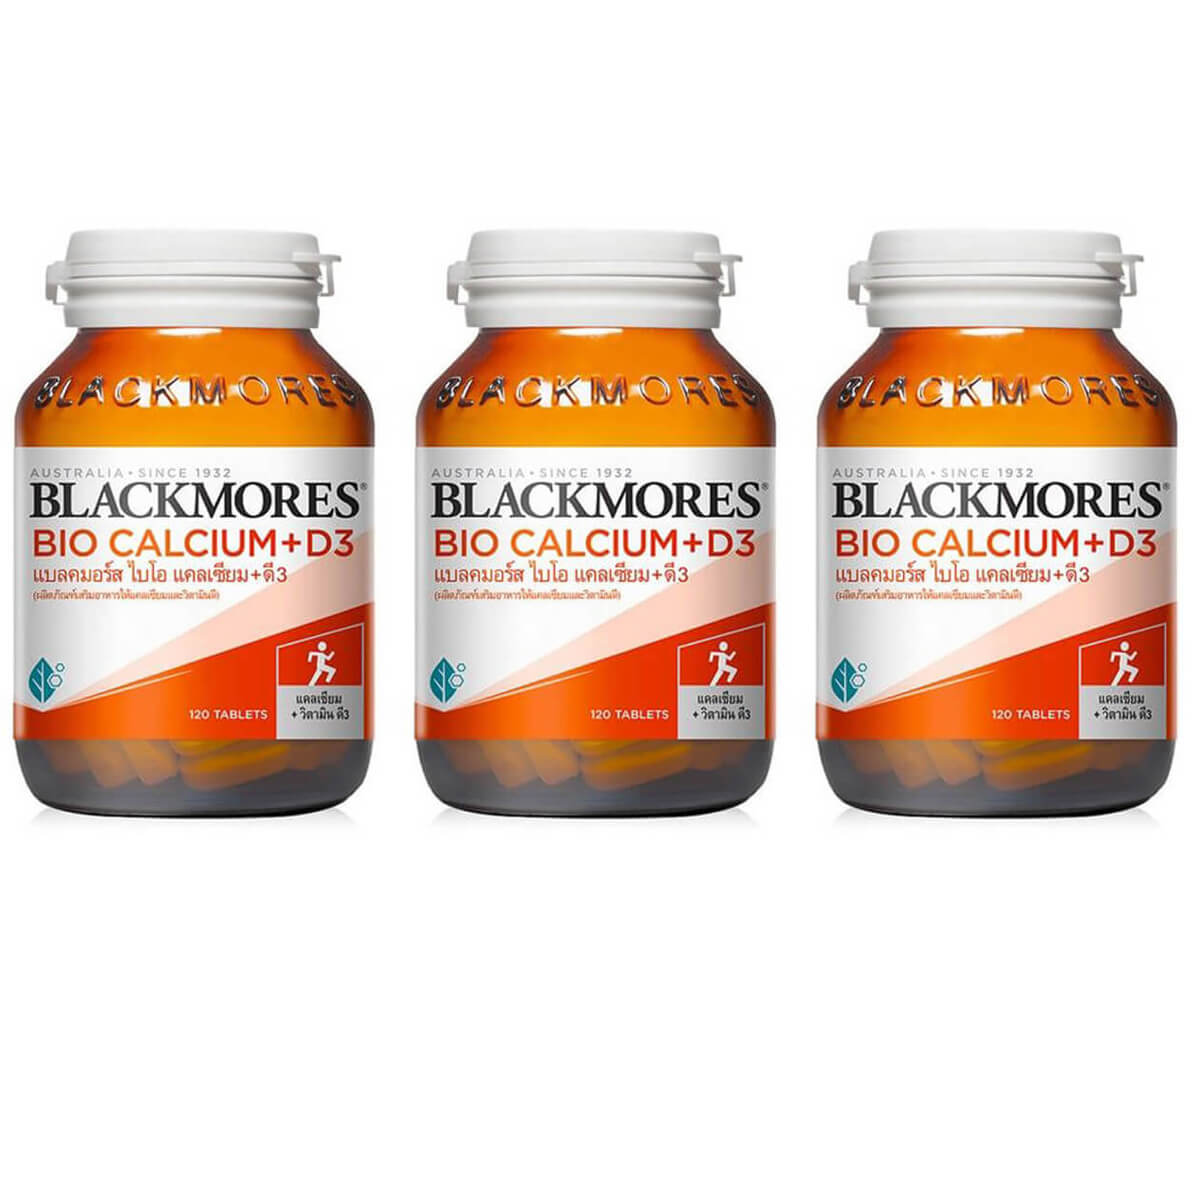 Пищевая добавка Blackmores Bio Calcium + D3, 3 банки по 120 таблеток пищевая добавка exoticmenu рептиам calcium из чистого кальция без витамина d3 для всех видов рептилий и амфибий